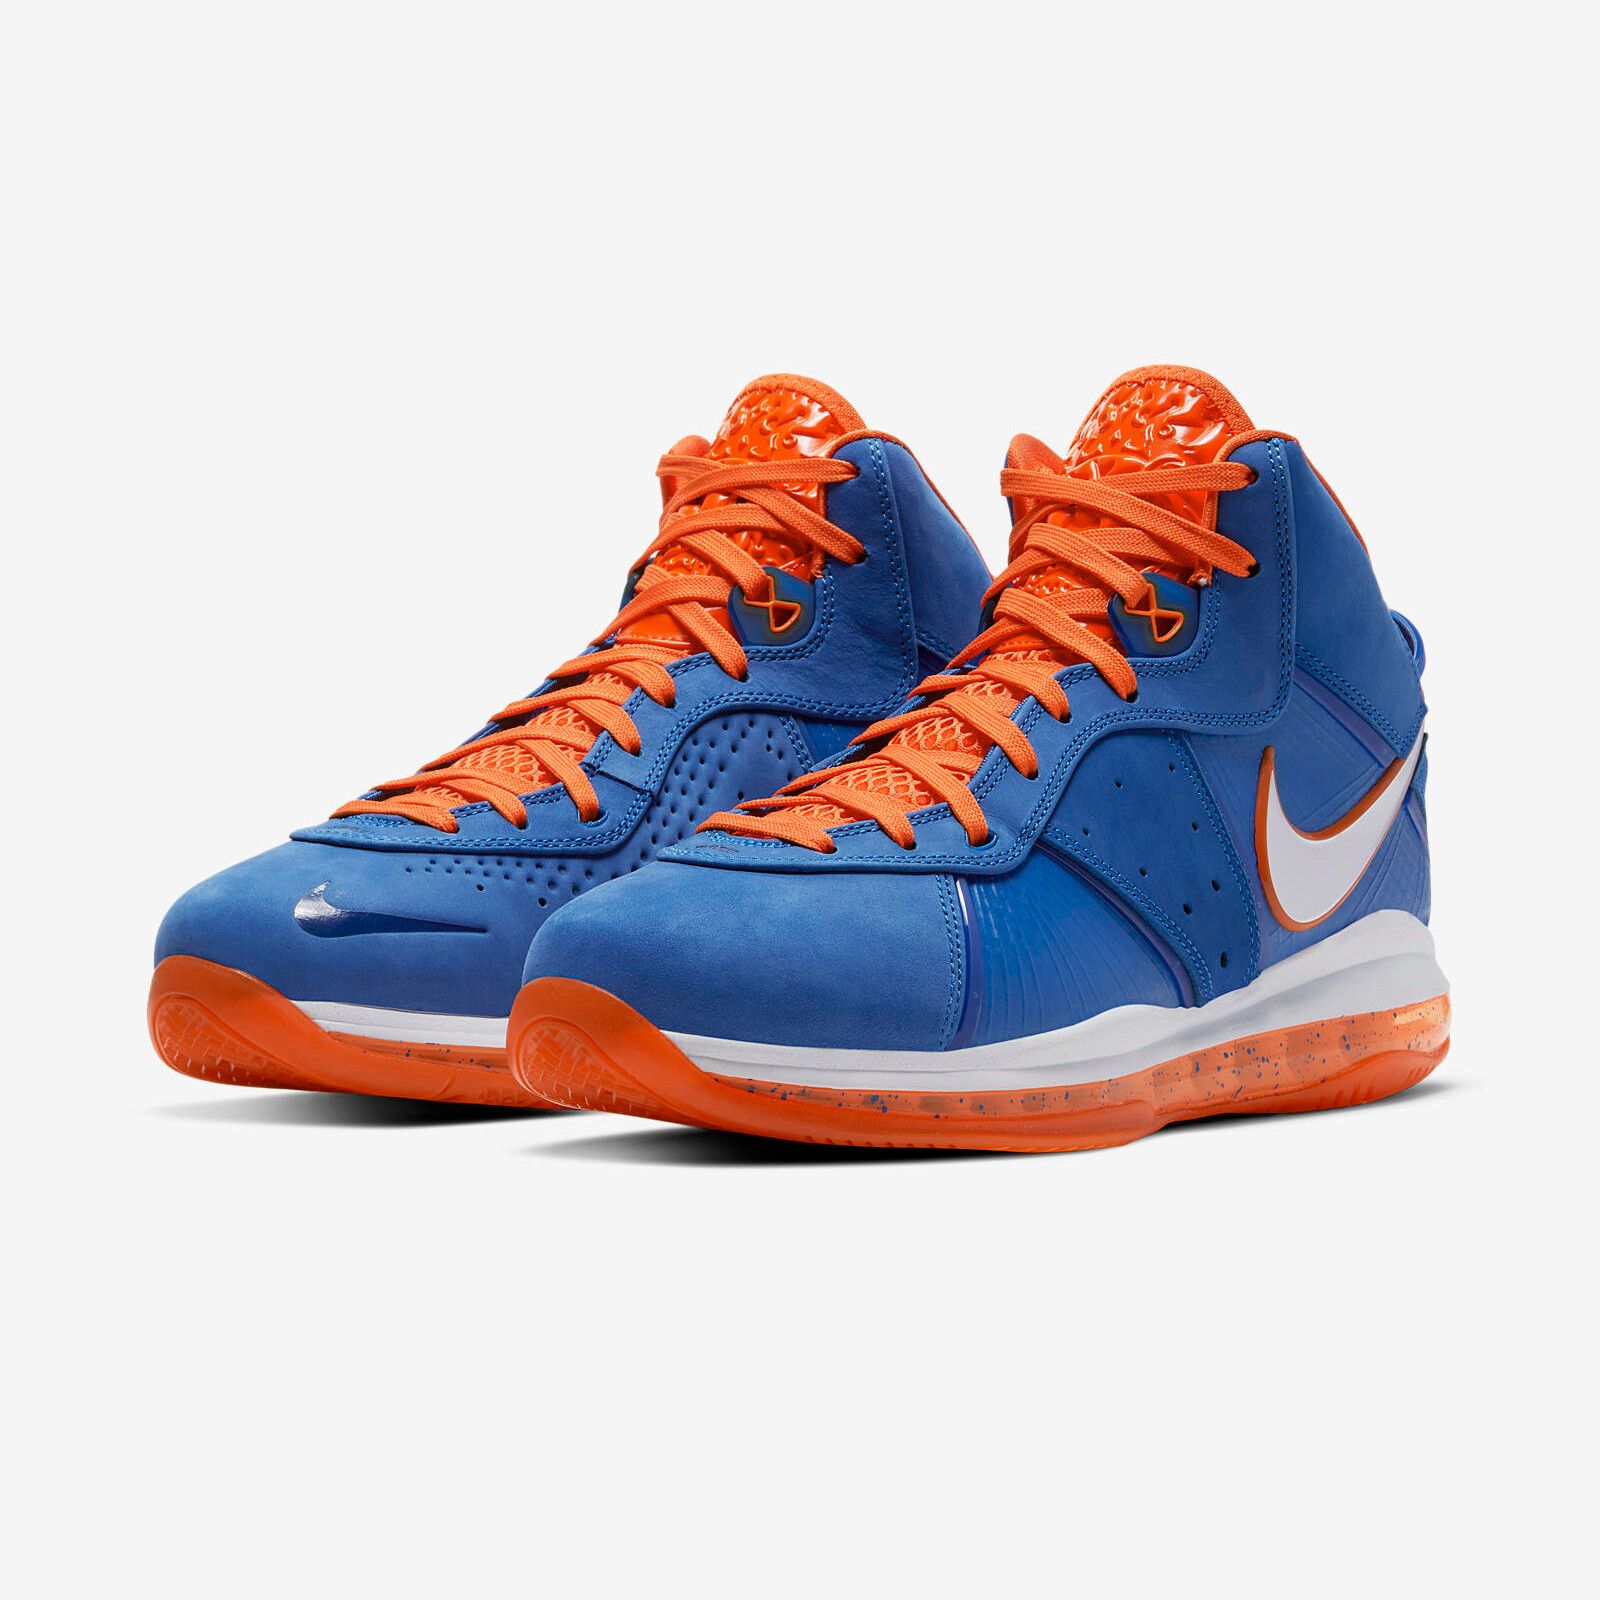 Nike LeBron 8
Blue / Orange